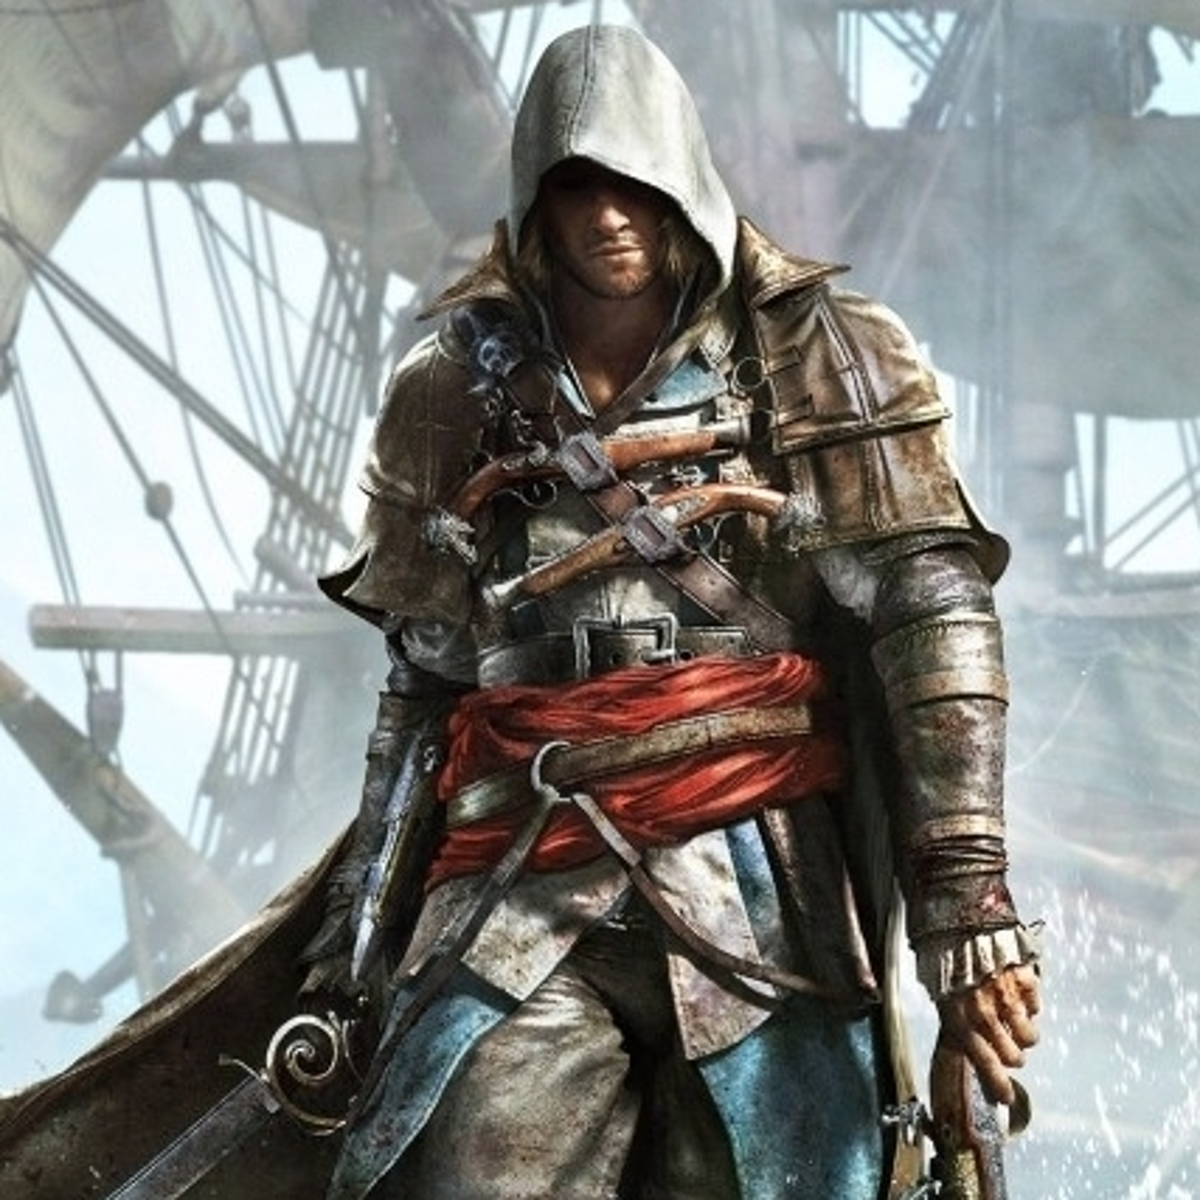 Assassin's Creed 4 Black Flag - Guia: Solução completa, truques, dicas -  Singleplayer